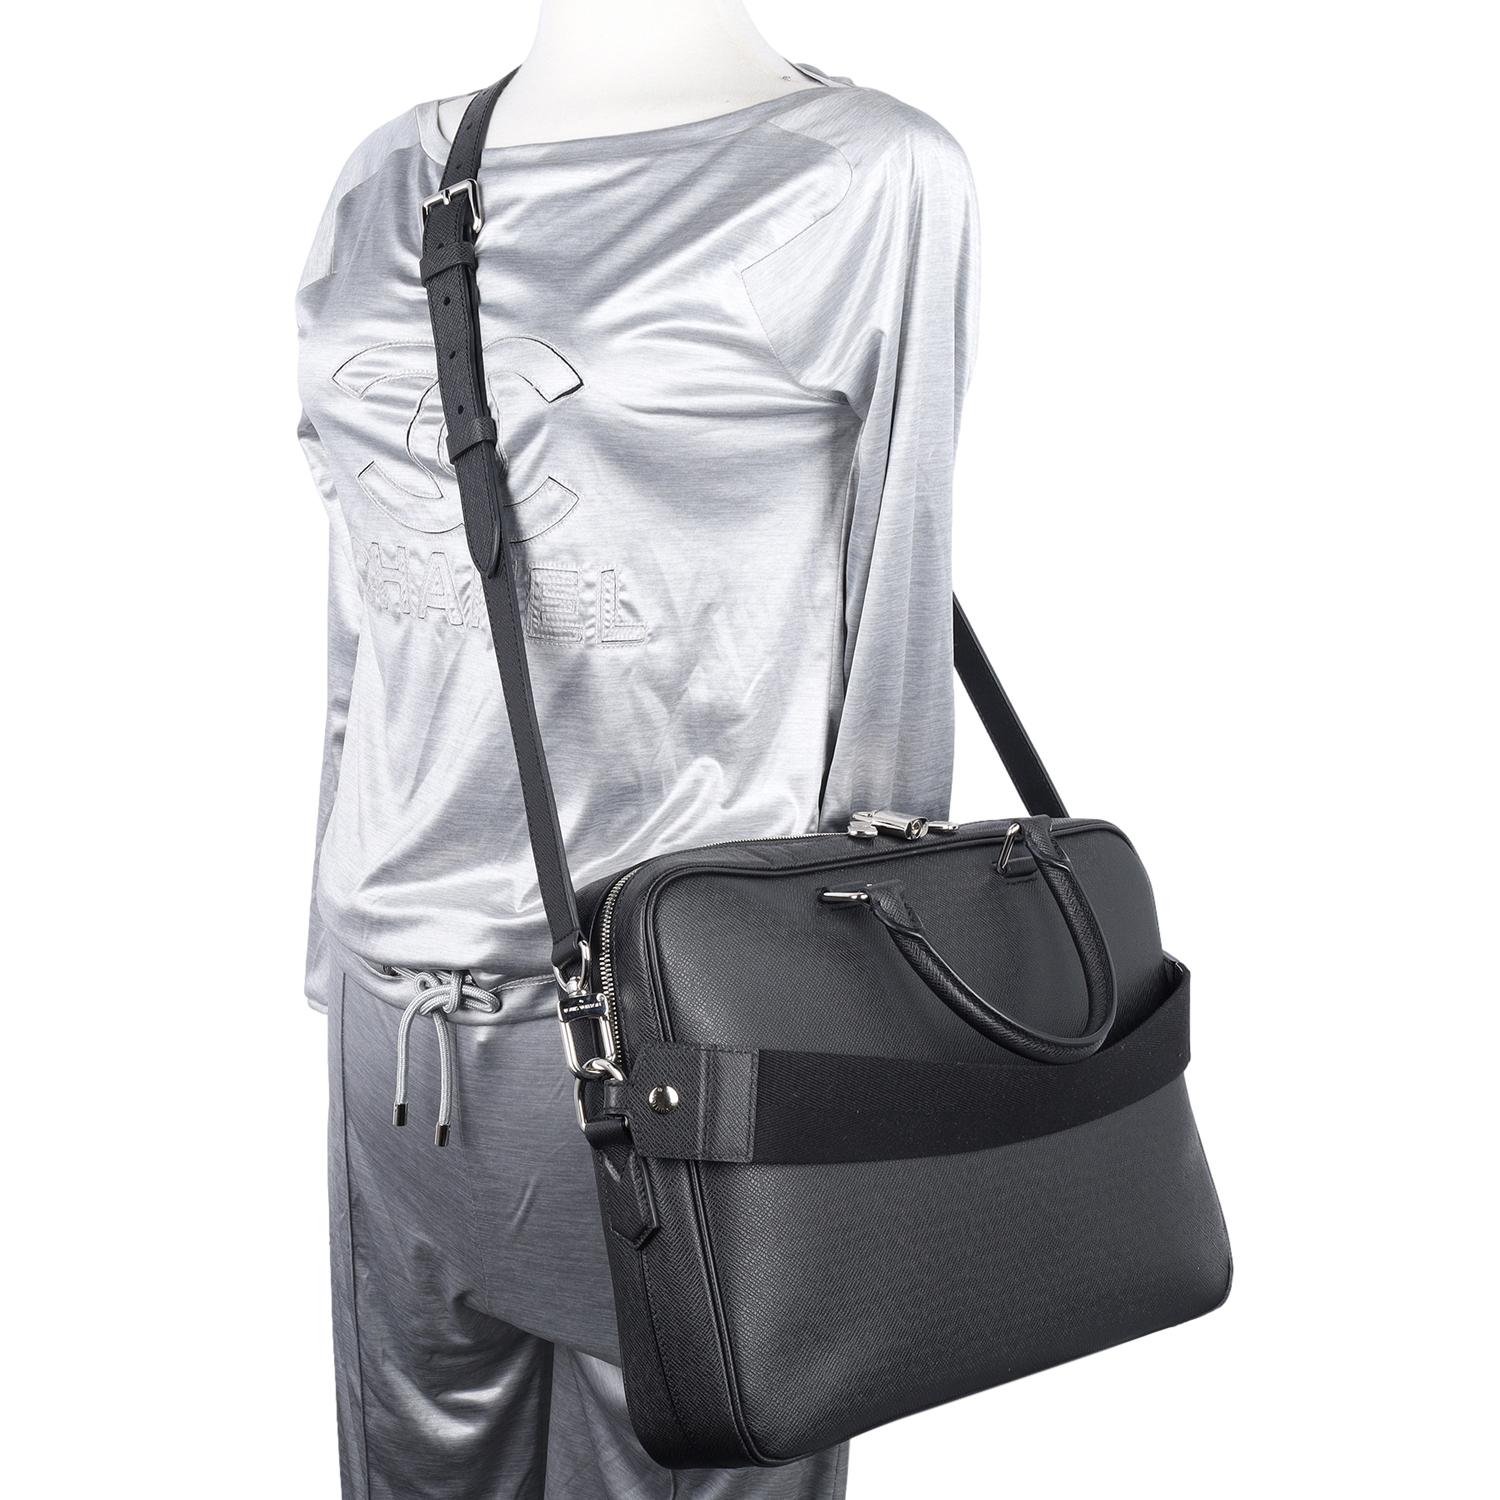 Authentique, déjà aimé Louis Vuitton Taiga Porte-Documents Business Messenger Bag en noir. Un LV se trouve sur le devant du sac, dans le coin droit.

Ce porte-documents se compose de cuir de veau noir, de poignées en cuir roulées, d'une sangle à